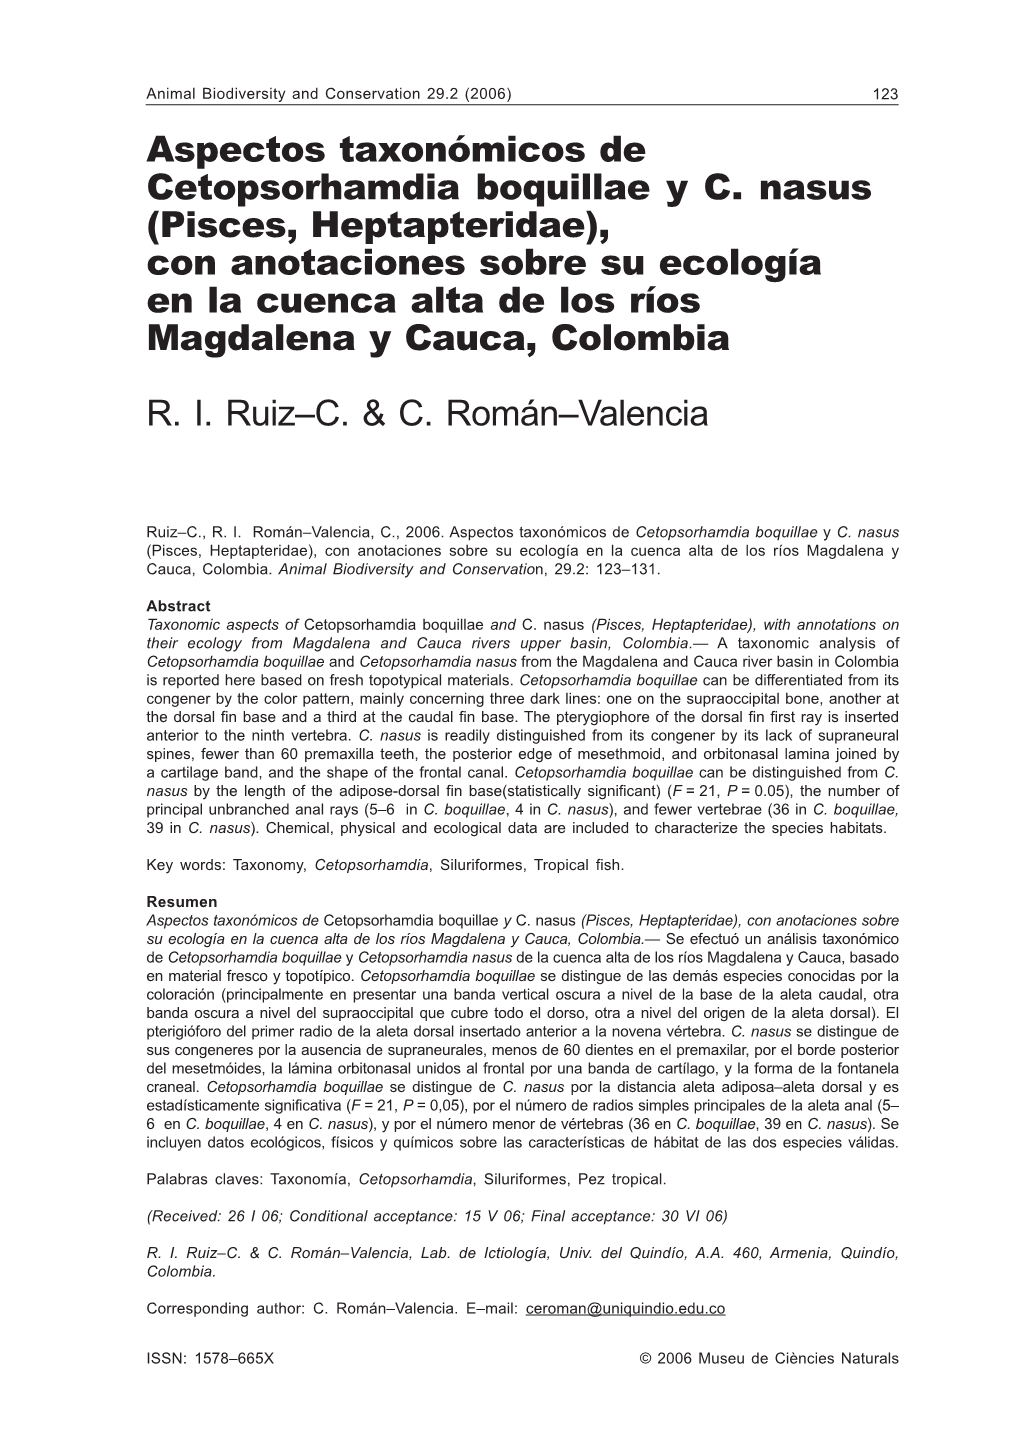 Aspectos Taxonómicos De Cetopsorhamdia Boquillae Y C. Nasus